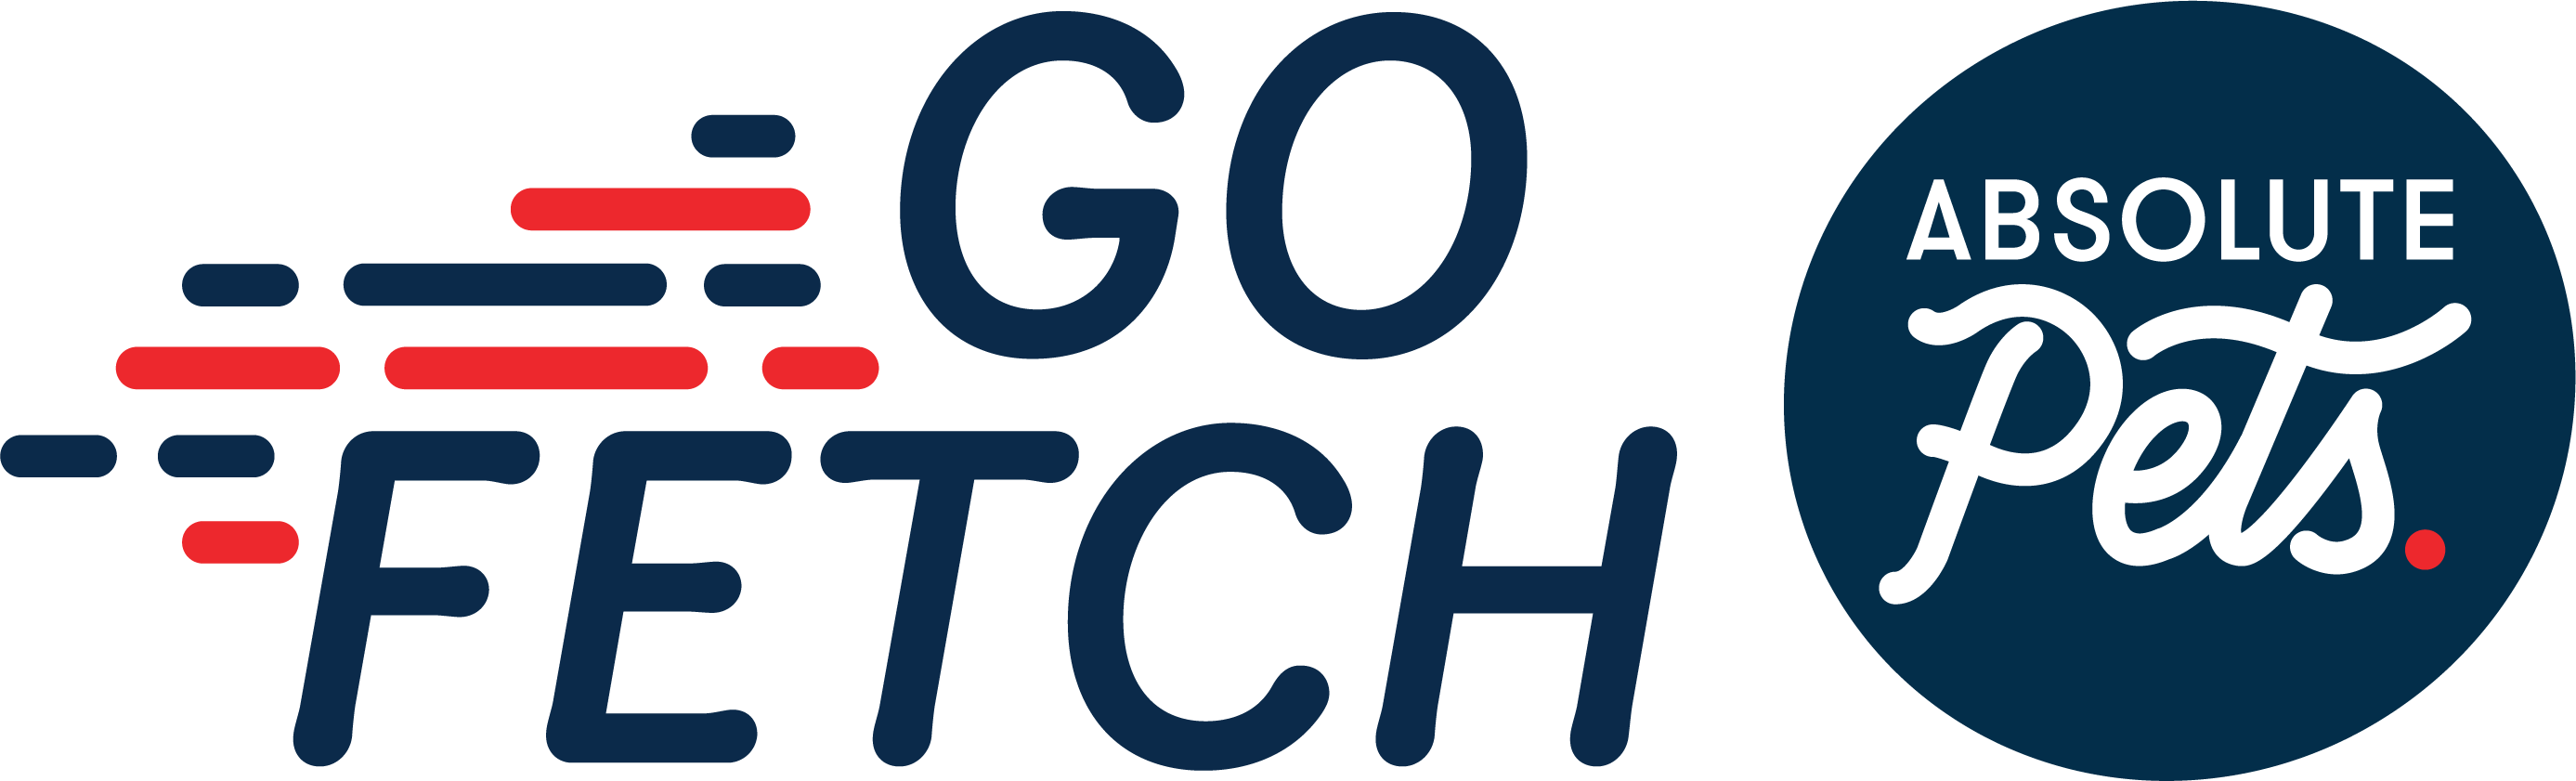 Go Fetch! Logo